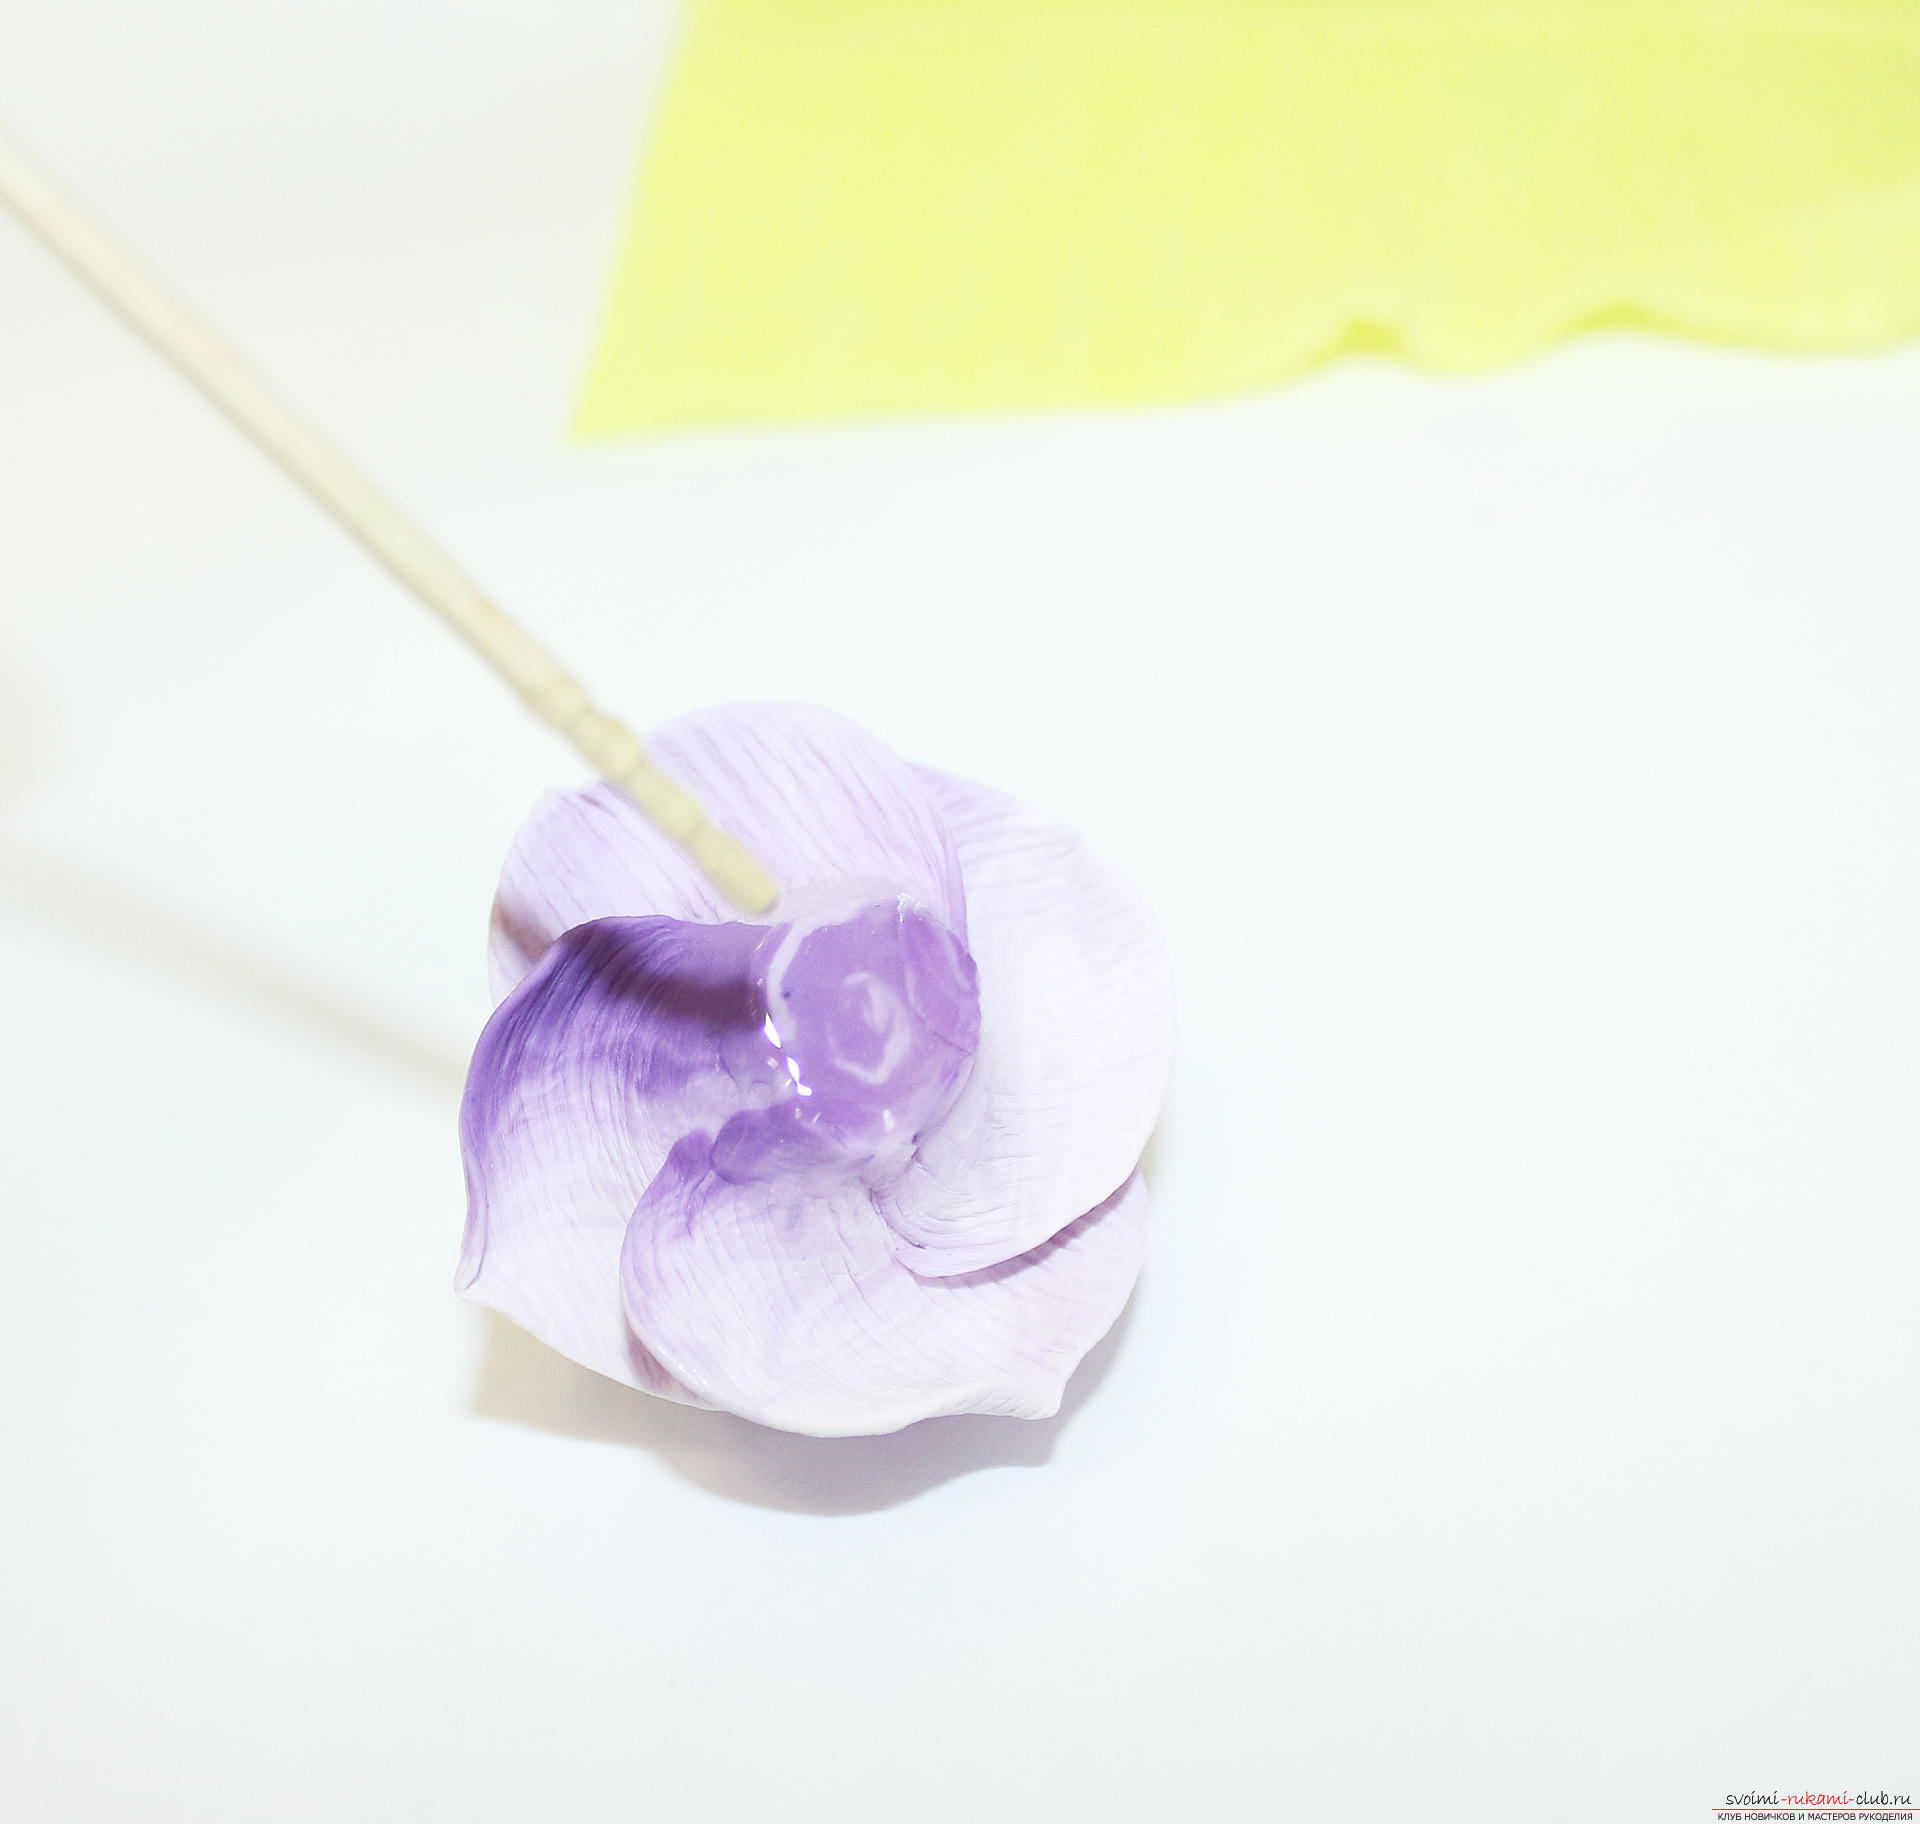 Deze masterclass met een foto en beschrijving leert je hoe je bloemen - rozen - kunt maken uit polymeerklei in textuurtechniek. Foto # 70